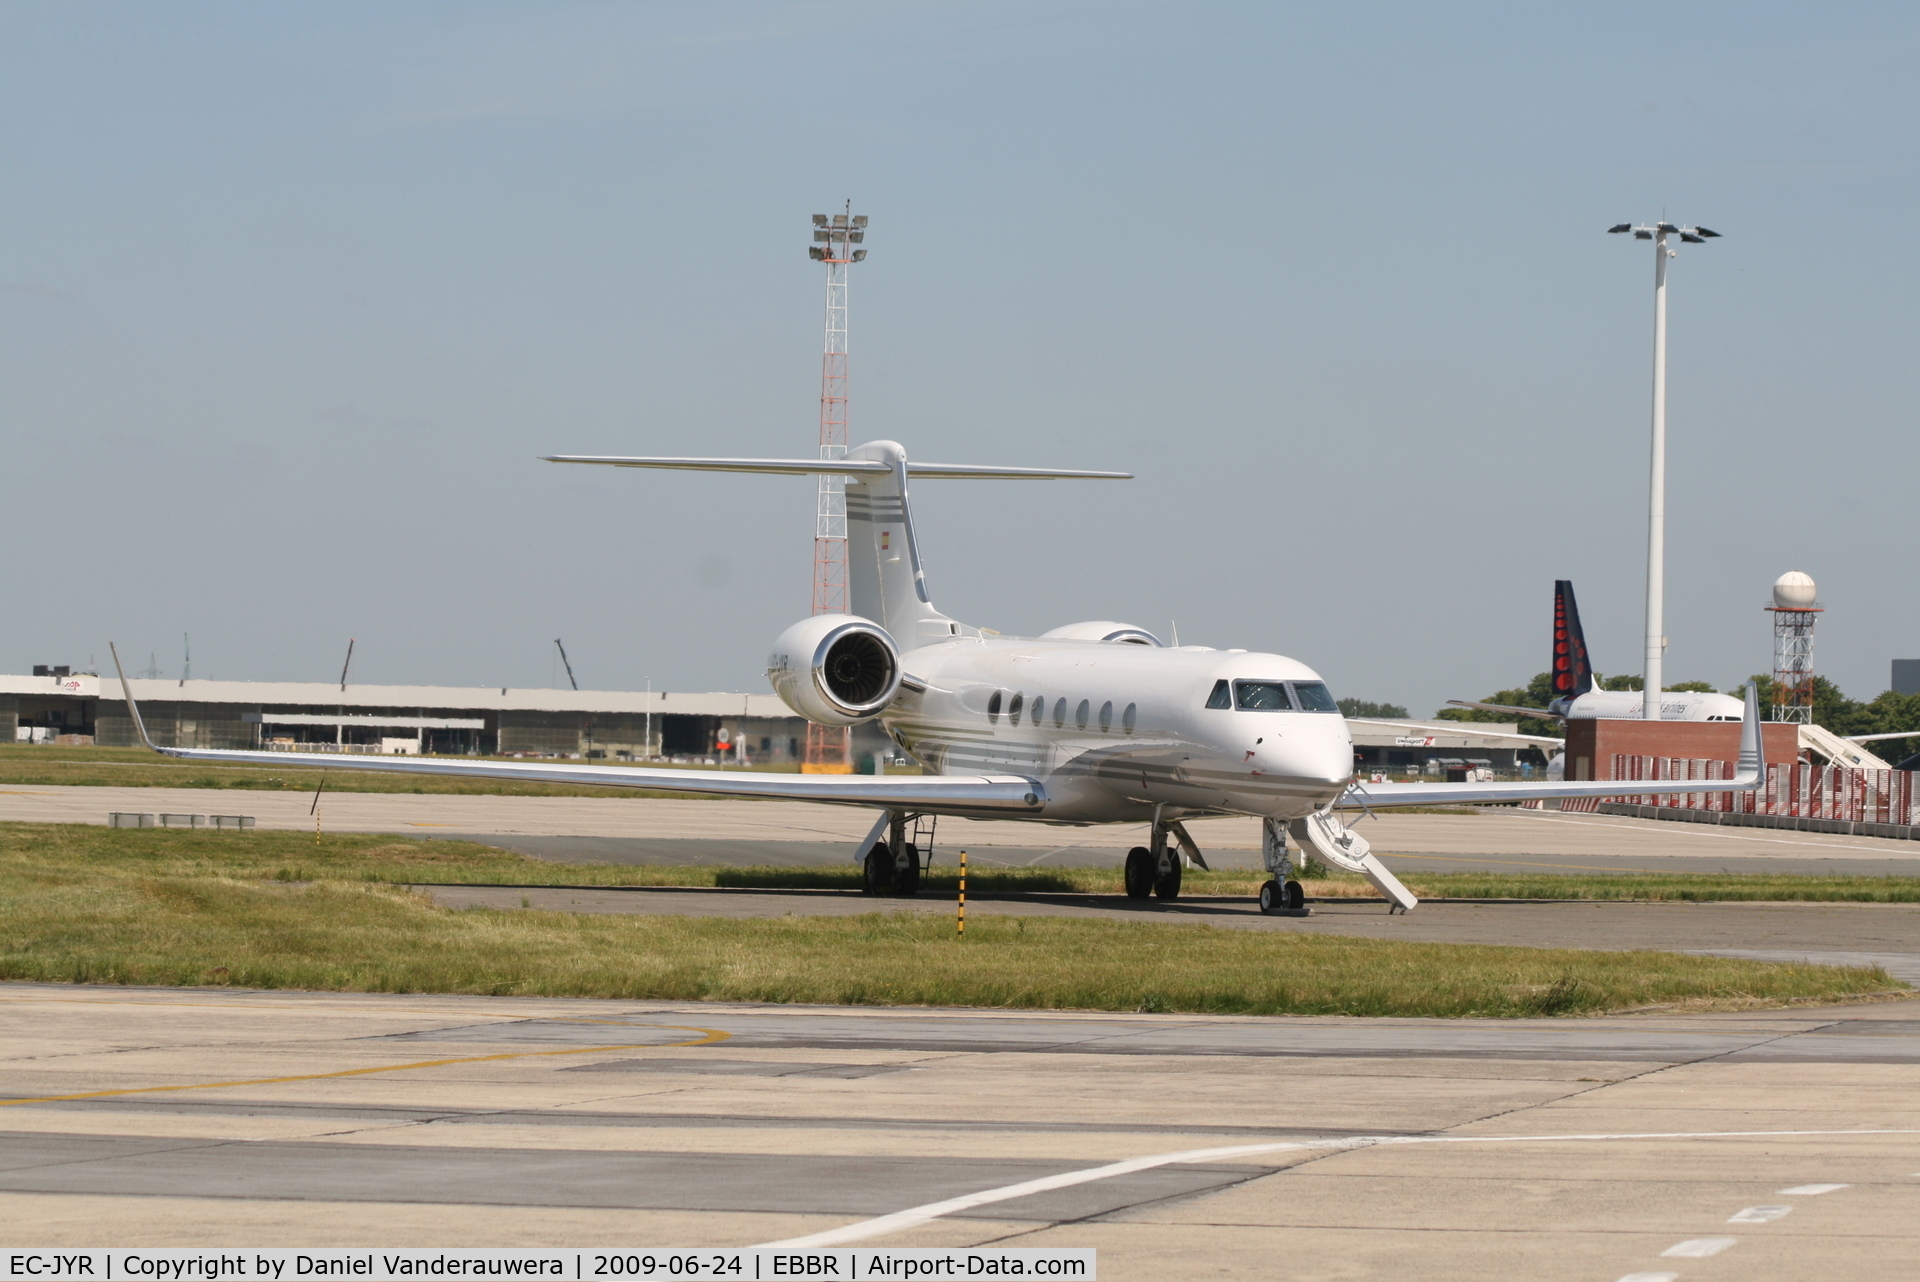 EC-JYR, 2006 Gulfstream Aerospace GV-SP (G550) C/N 5116, parked on General Aviation apron (Abelag)